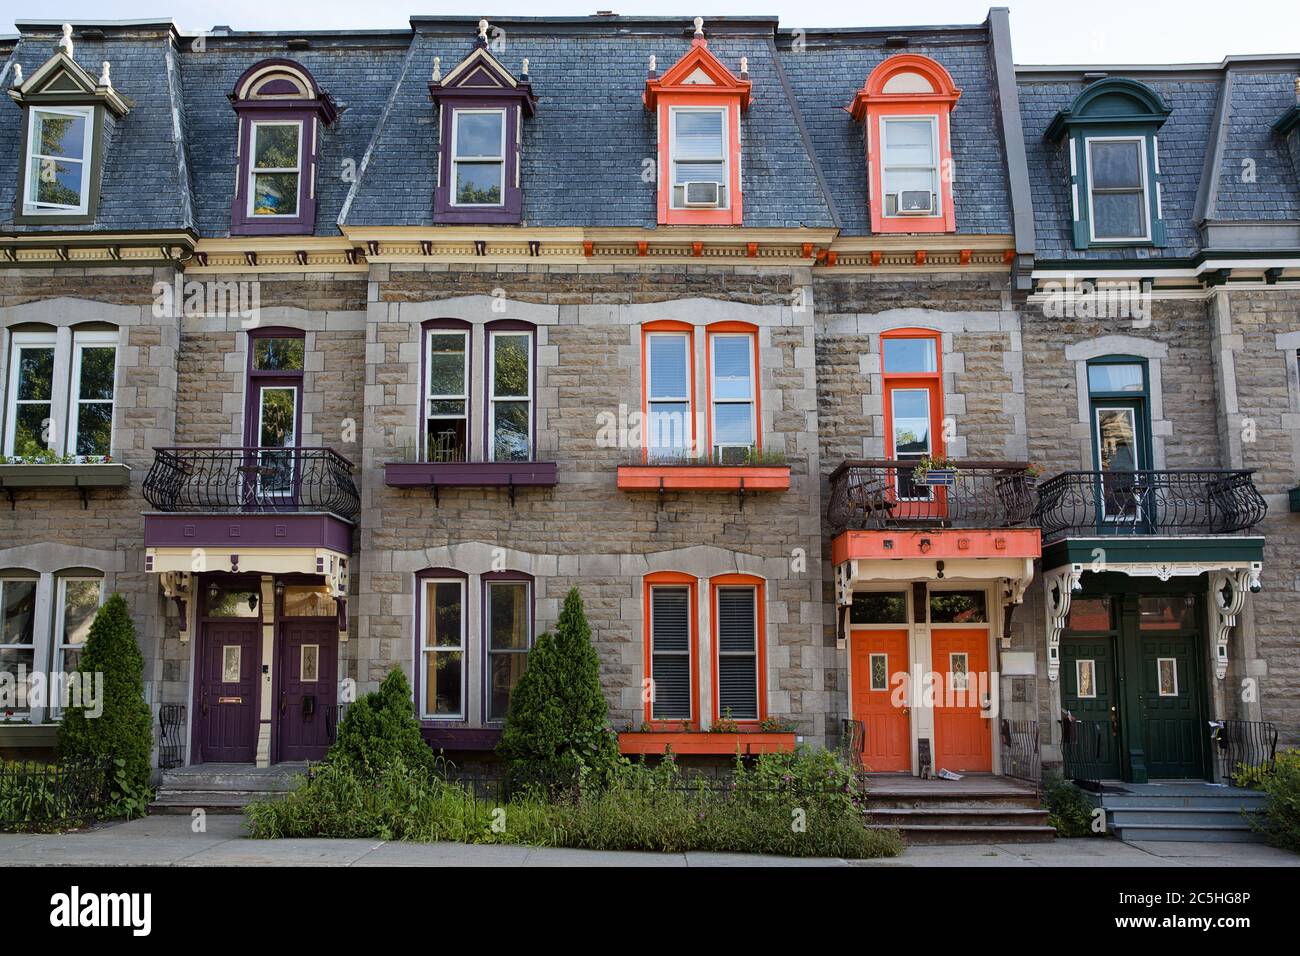 Maisons de ville aux couleurs vives à Montréal, Québec, Canada Banque D'Images